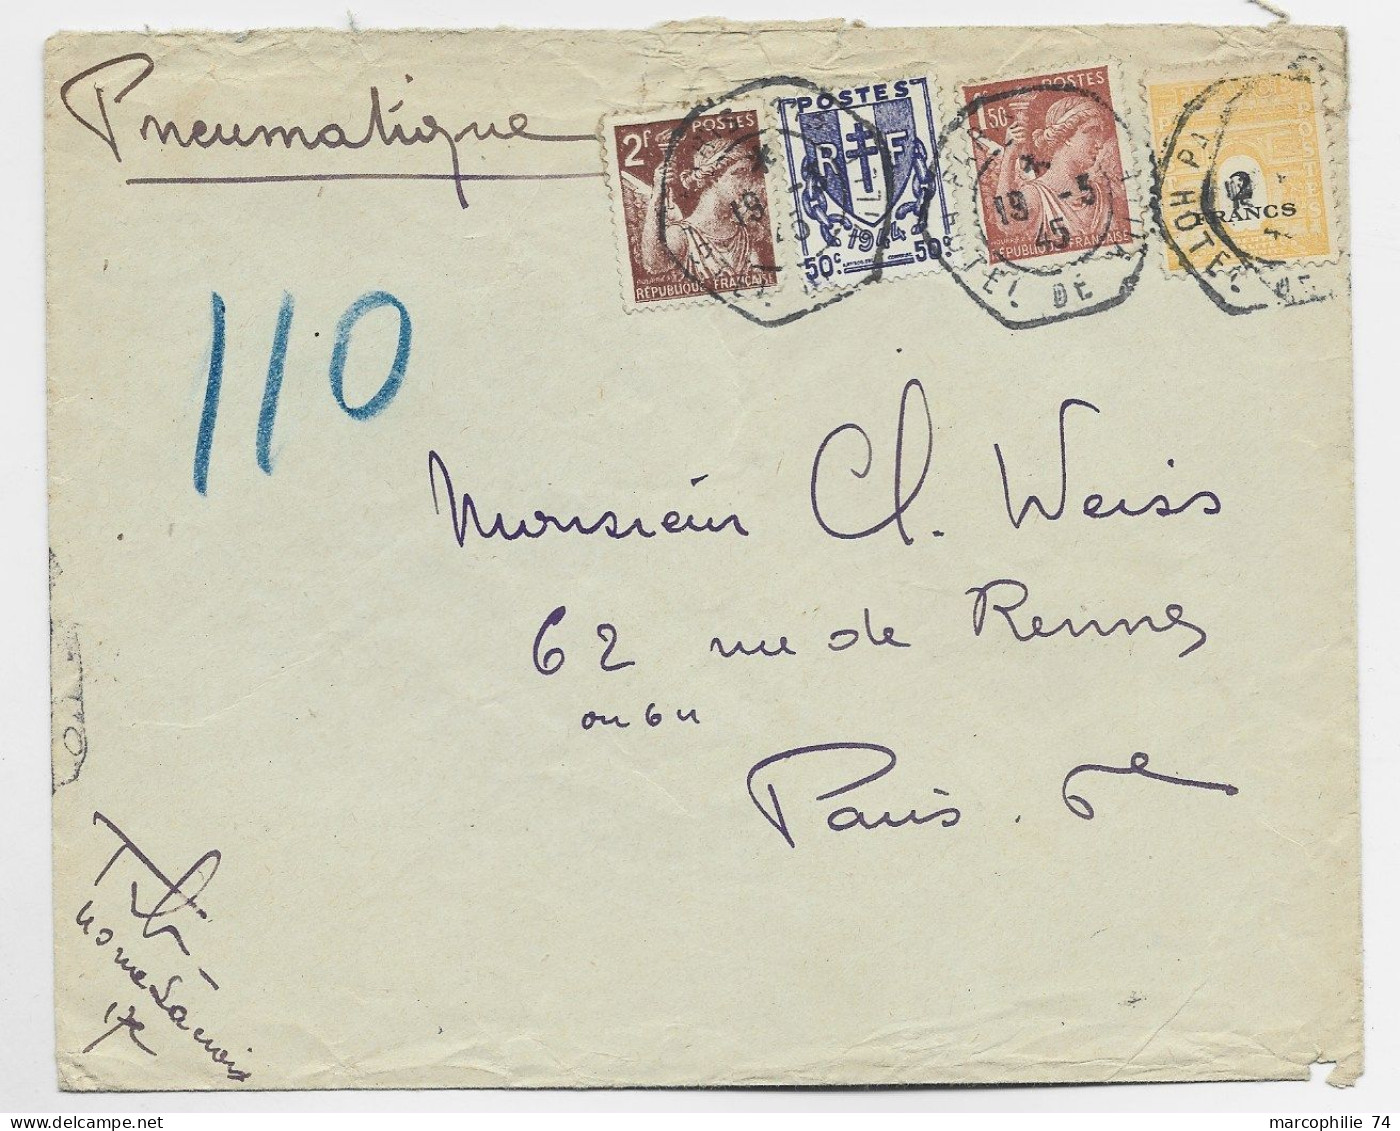 FRANCE ARC TRIOMPHE 2FR+ CHAINE 50C + 2FR+1FR50  PNEUMATIQUE C. HEX PARIS 19.3.1945 HOTEL DE VILLE AU TARIF - 1944-45 Arc Of Triomphe